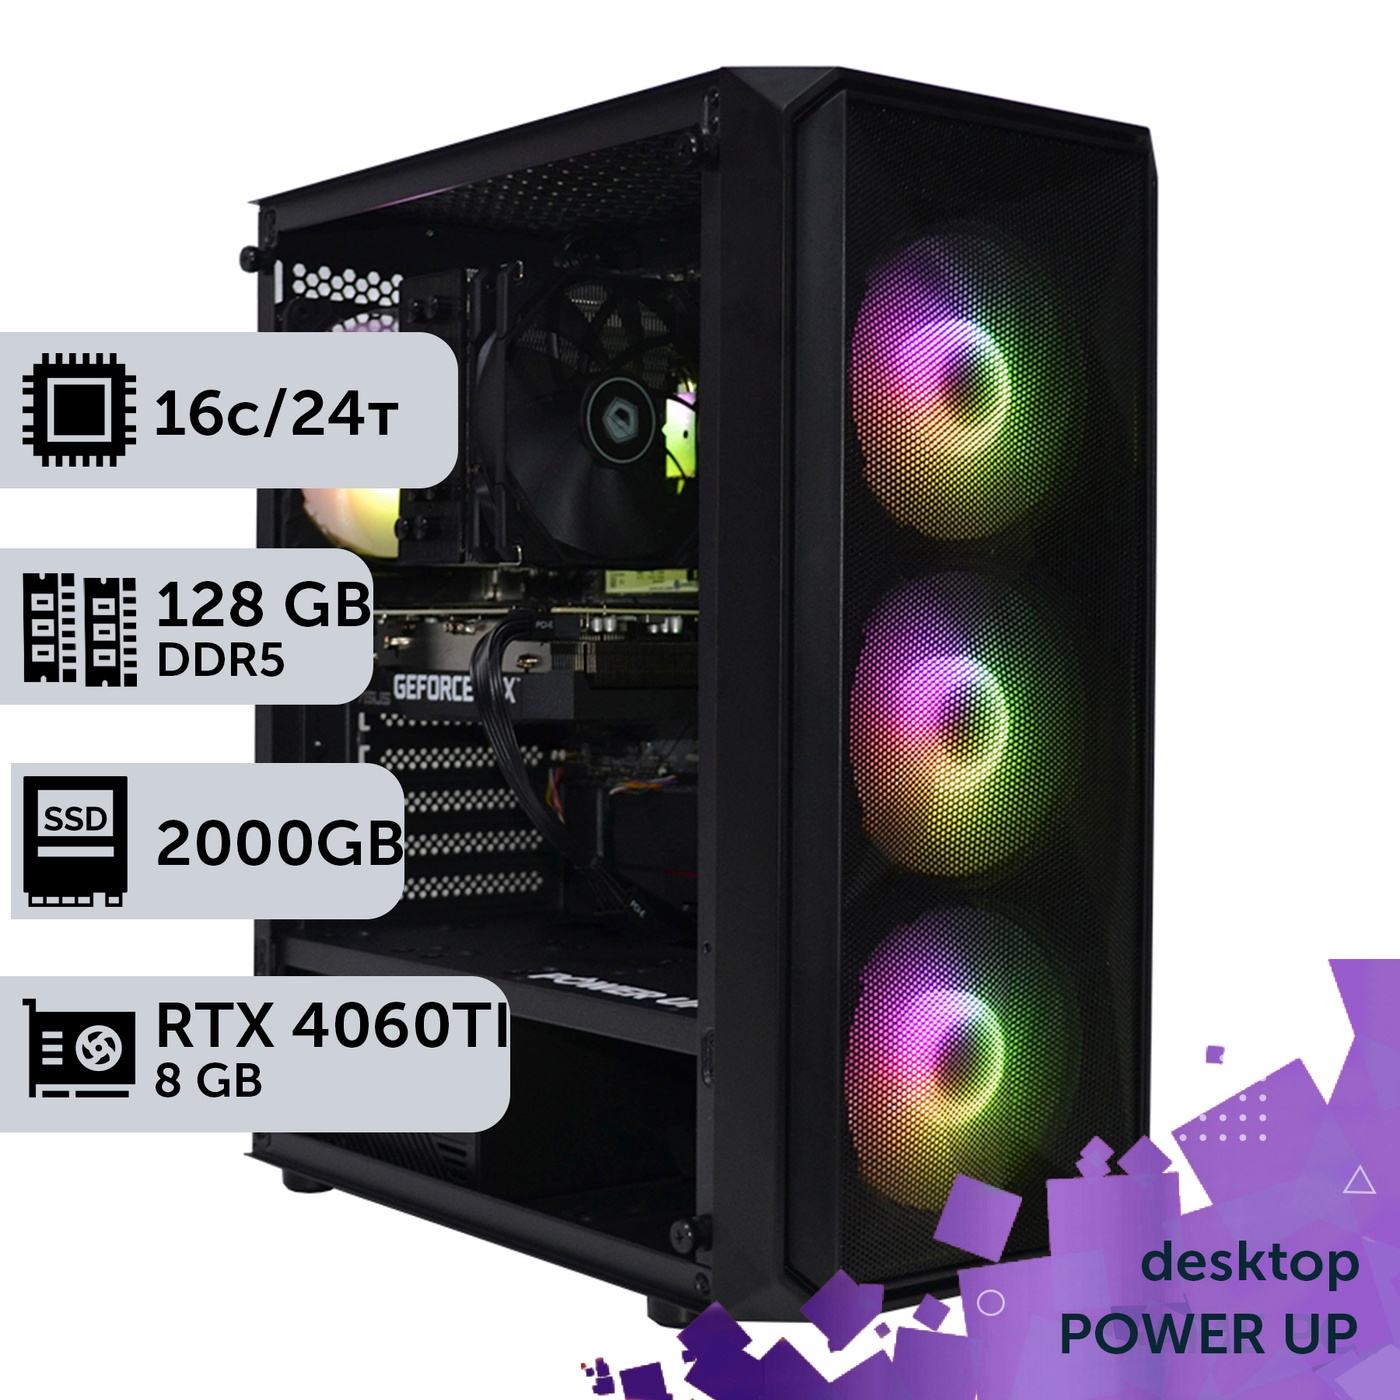 Робоча станція PowerUp Desktop #274 Core i7 13700K/128 GB/SSD 2TB/GeForce RTX 4060Ti 8GB